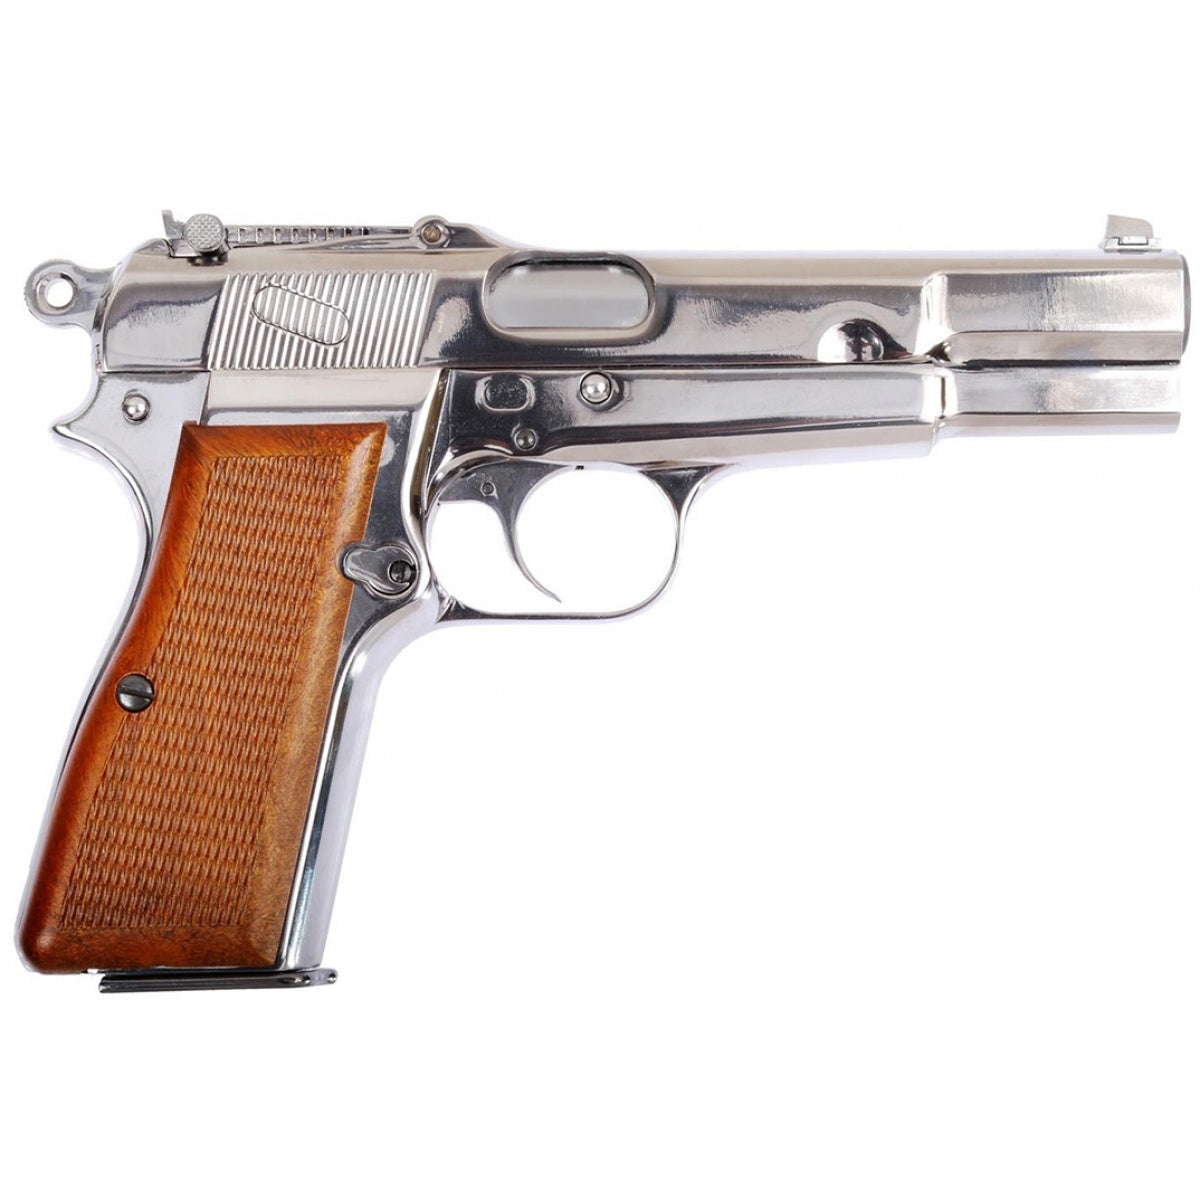 [WE-Tech] Full Metal Browning Hi-Power M1935 GBB Pistol[Chromed Plated][SV]